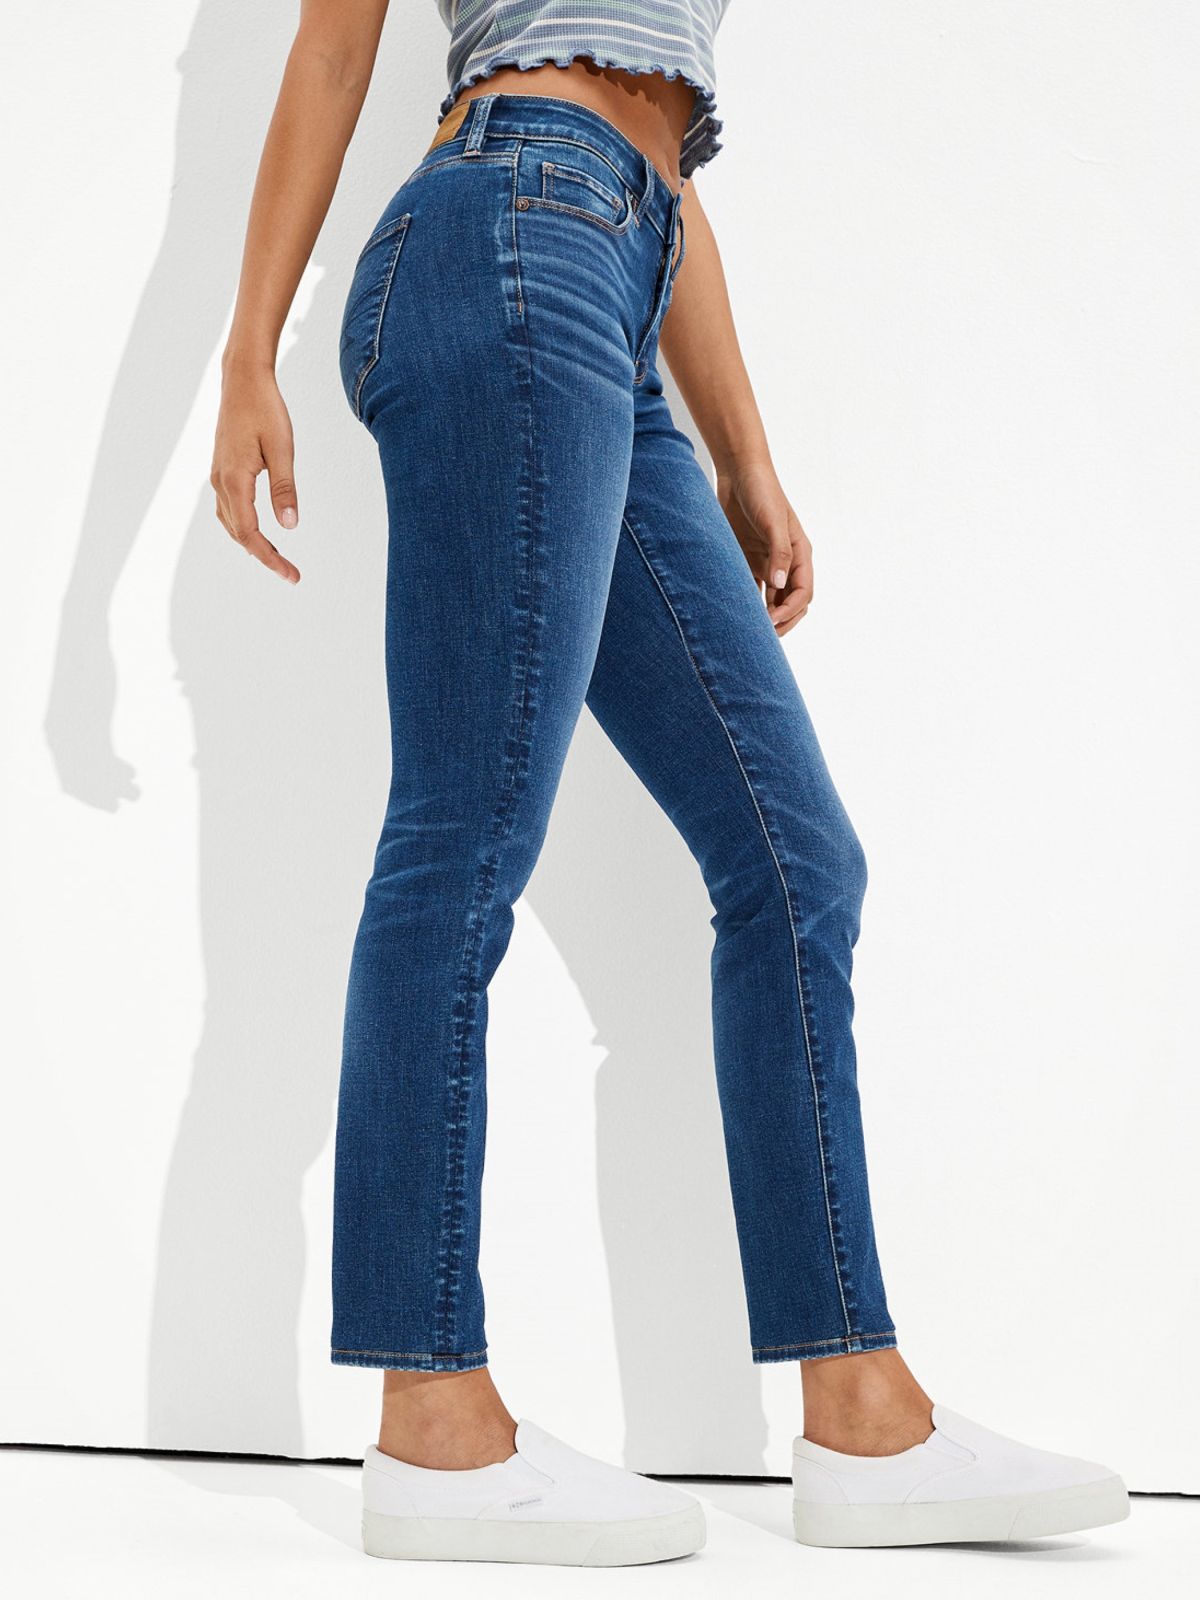  ג'ינס בגזרת SKINNY / נשים של AMERICAN EAGLE